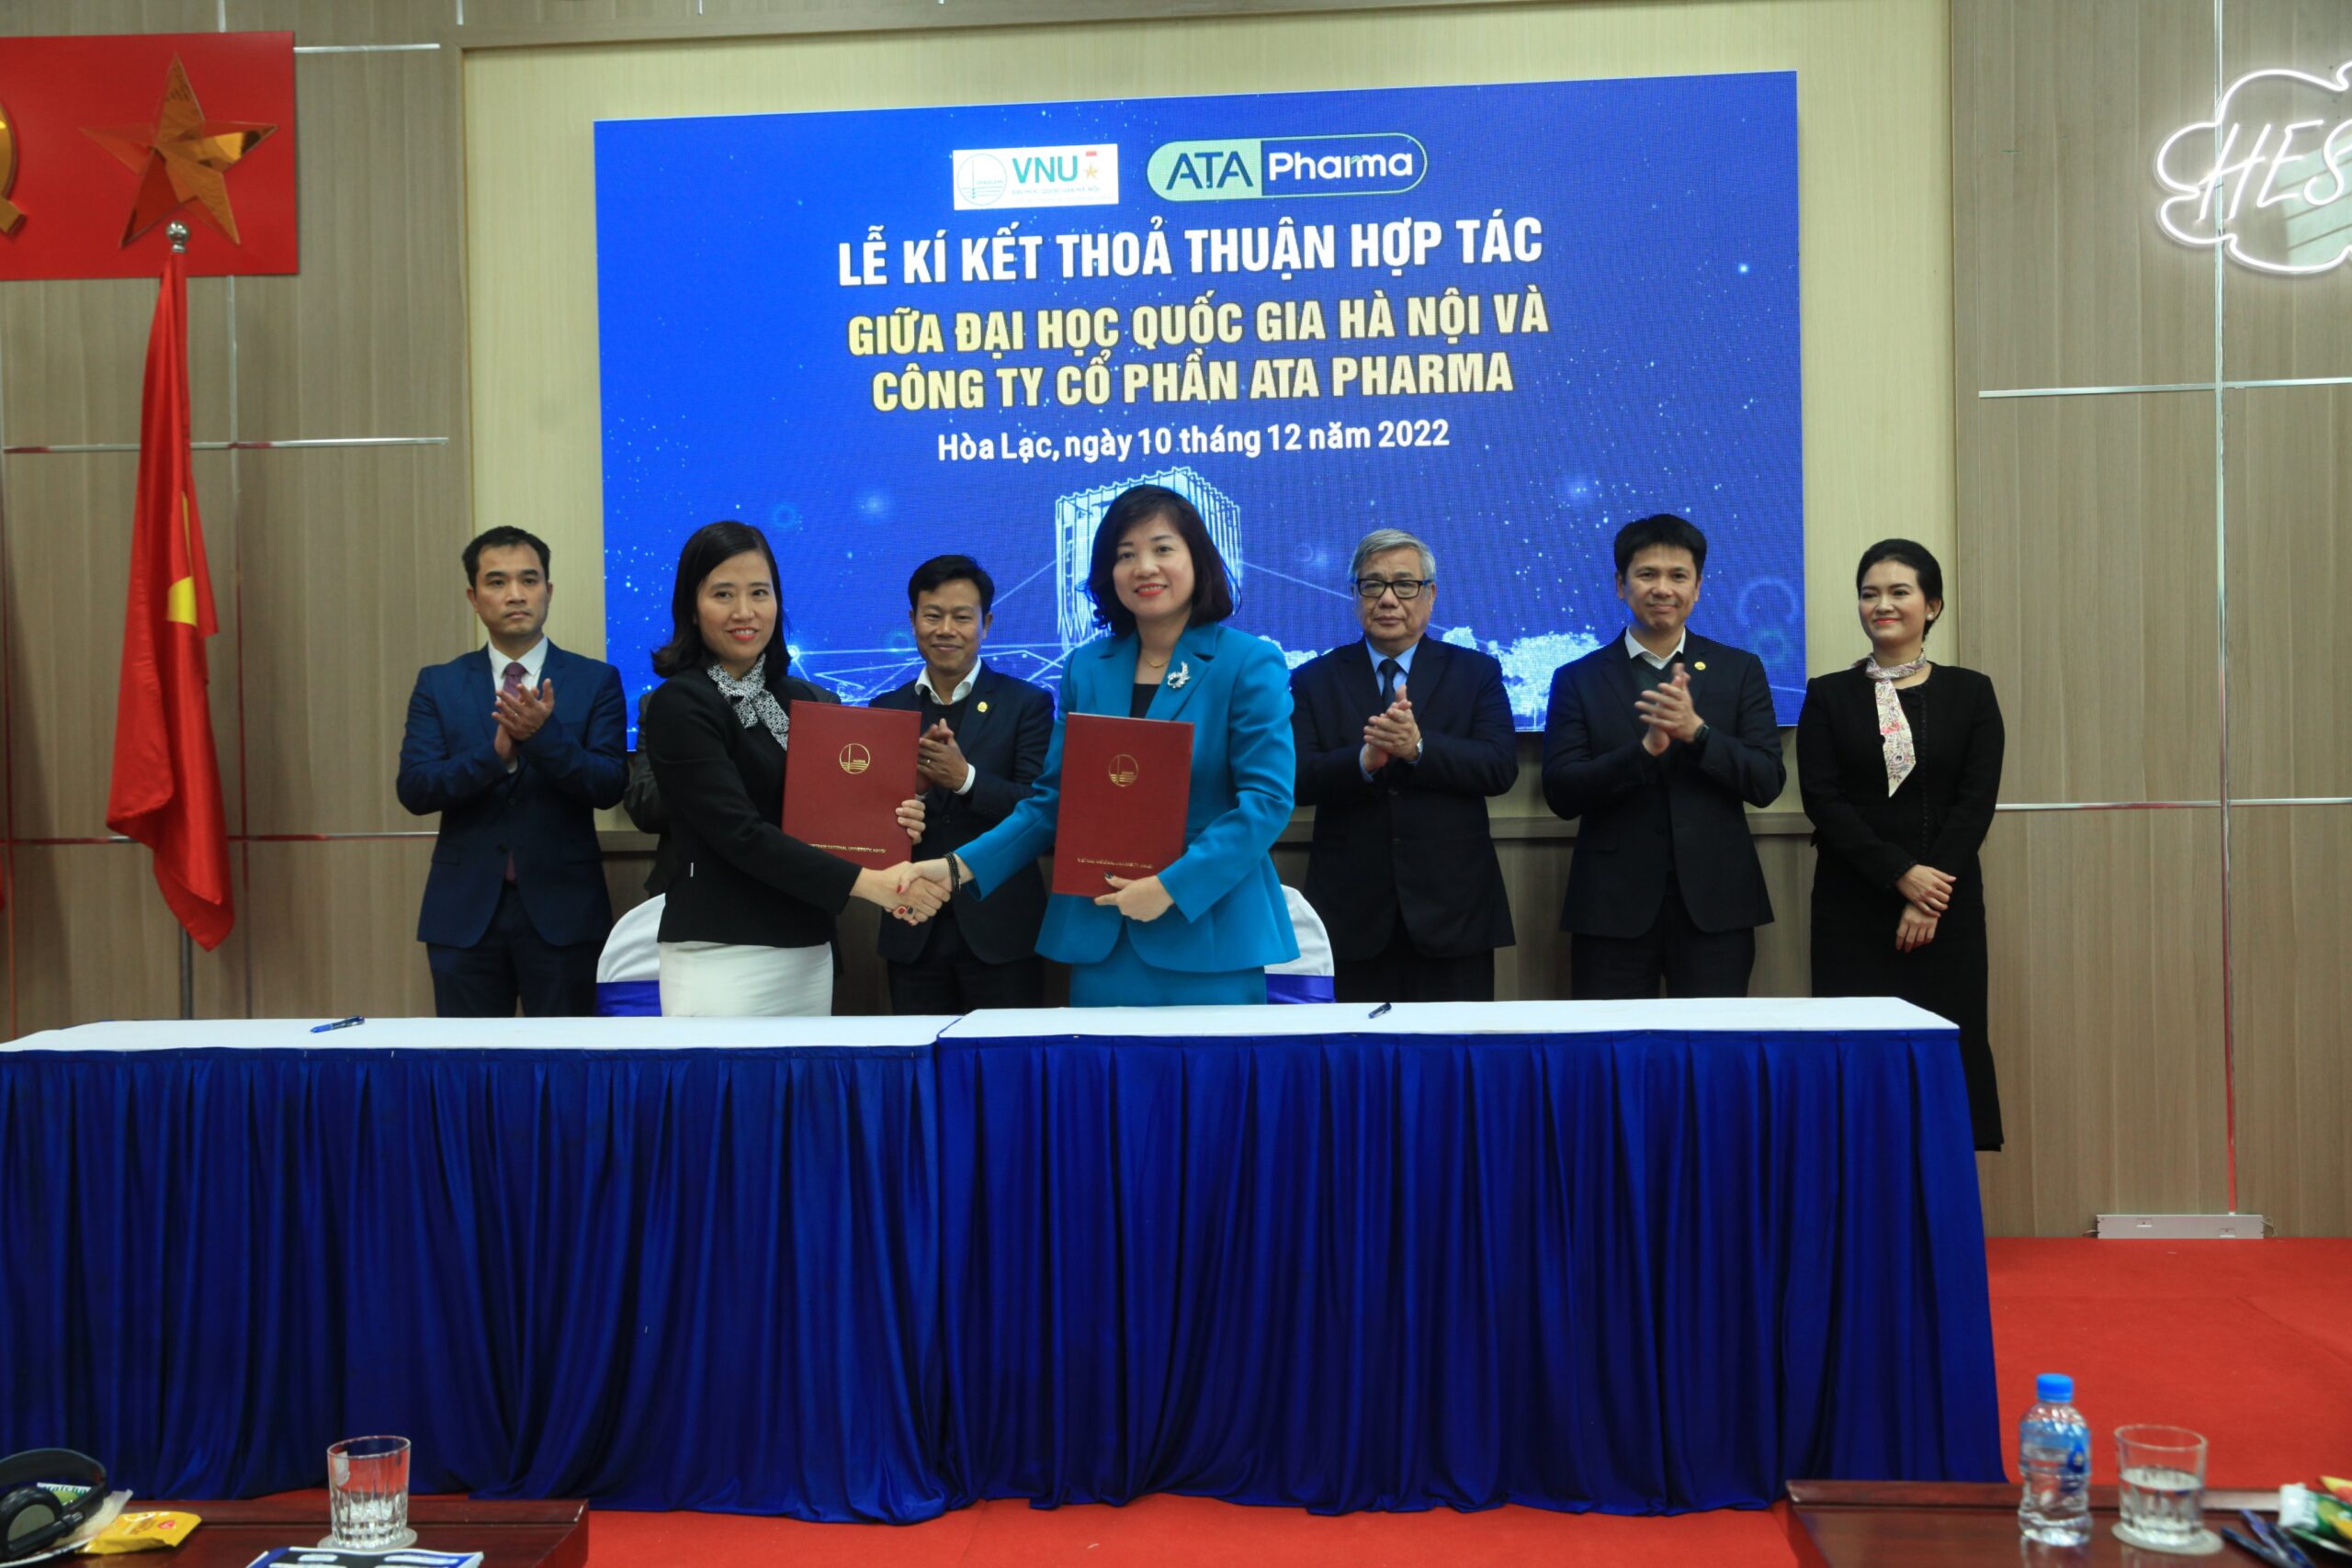 Lễ ký kết thỏa thuận hợp tác giữa Đại học Quốc gia Hà Nội và Công ty Cổ phần ATA Pharma